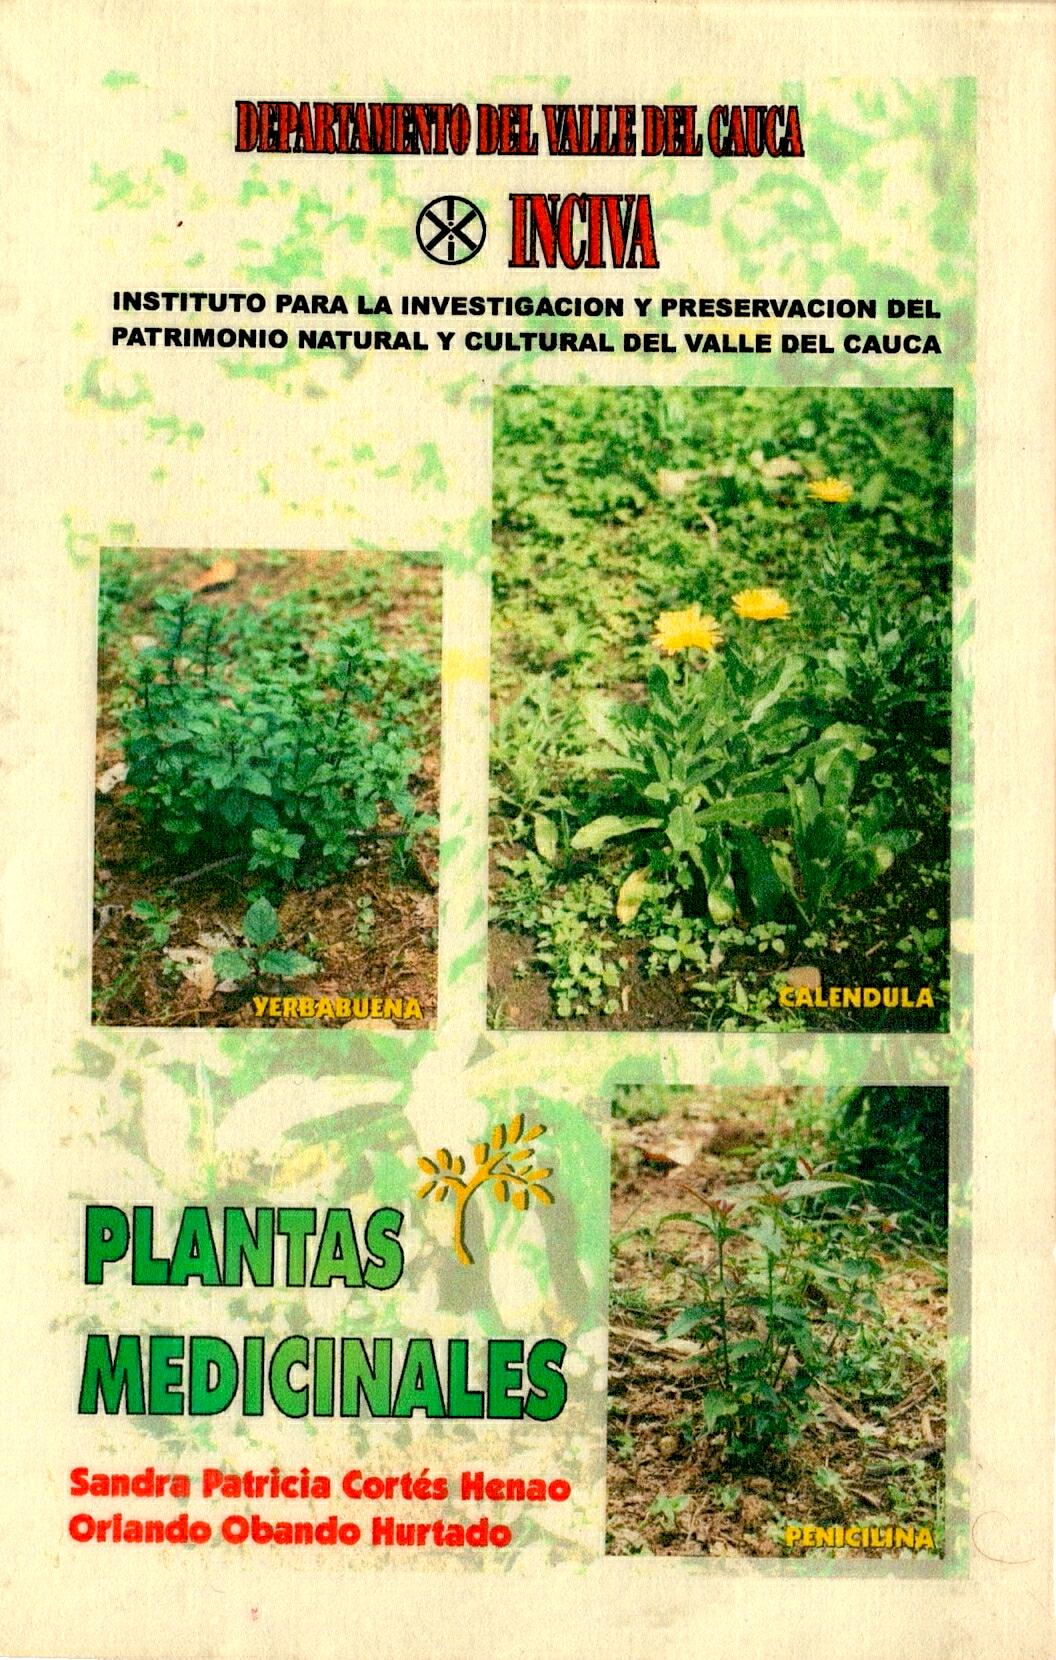 120363-plantas medicinales.jpg